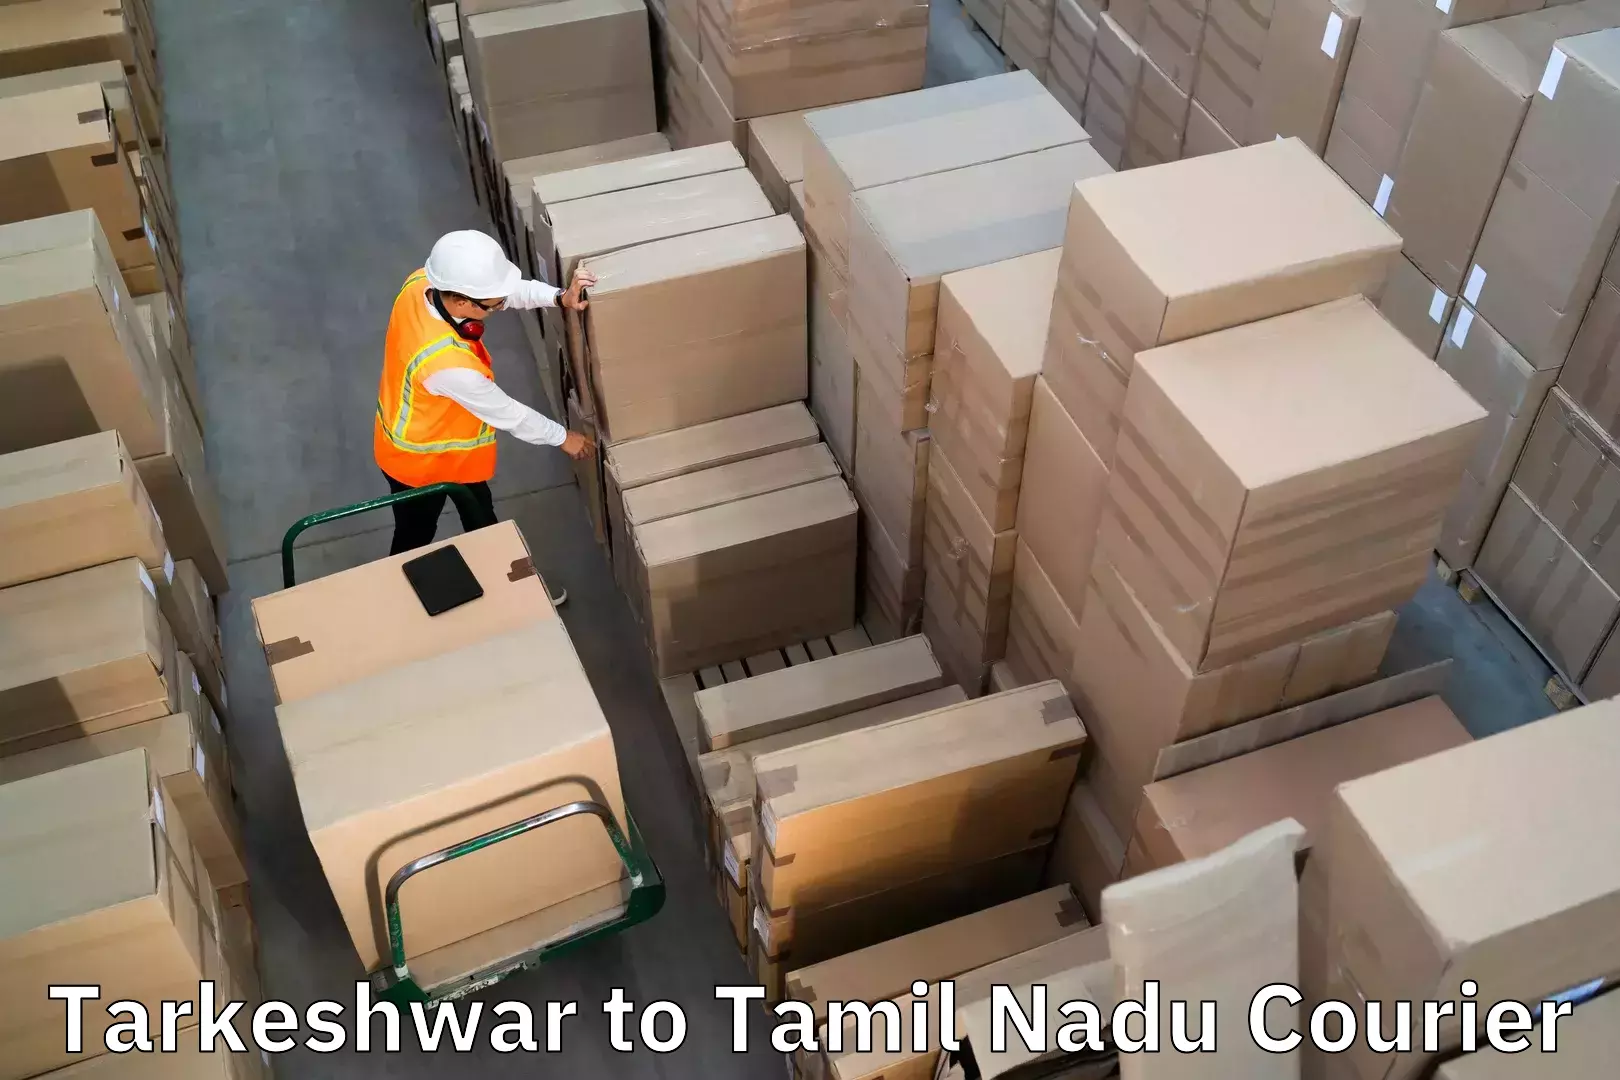 Baggage courier guide in Tarkeshwar to Thiruvadanai